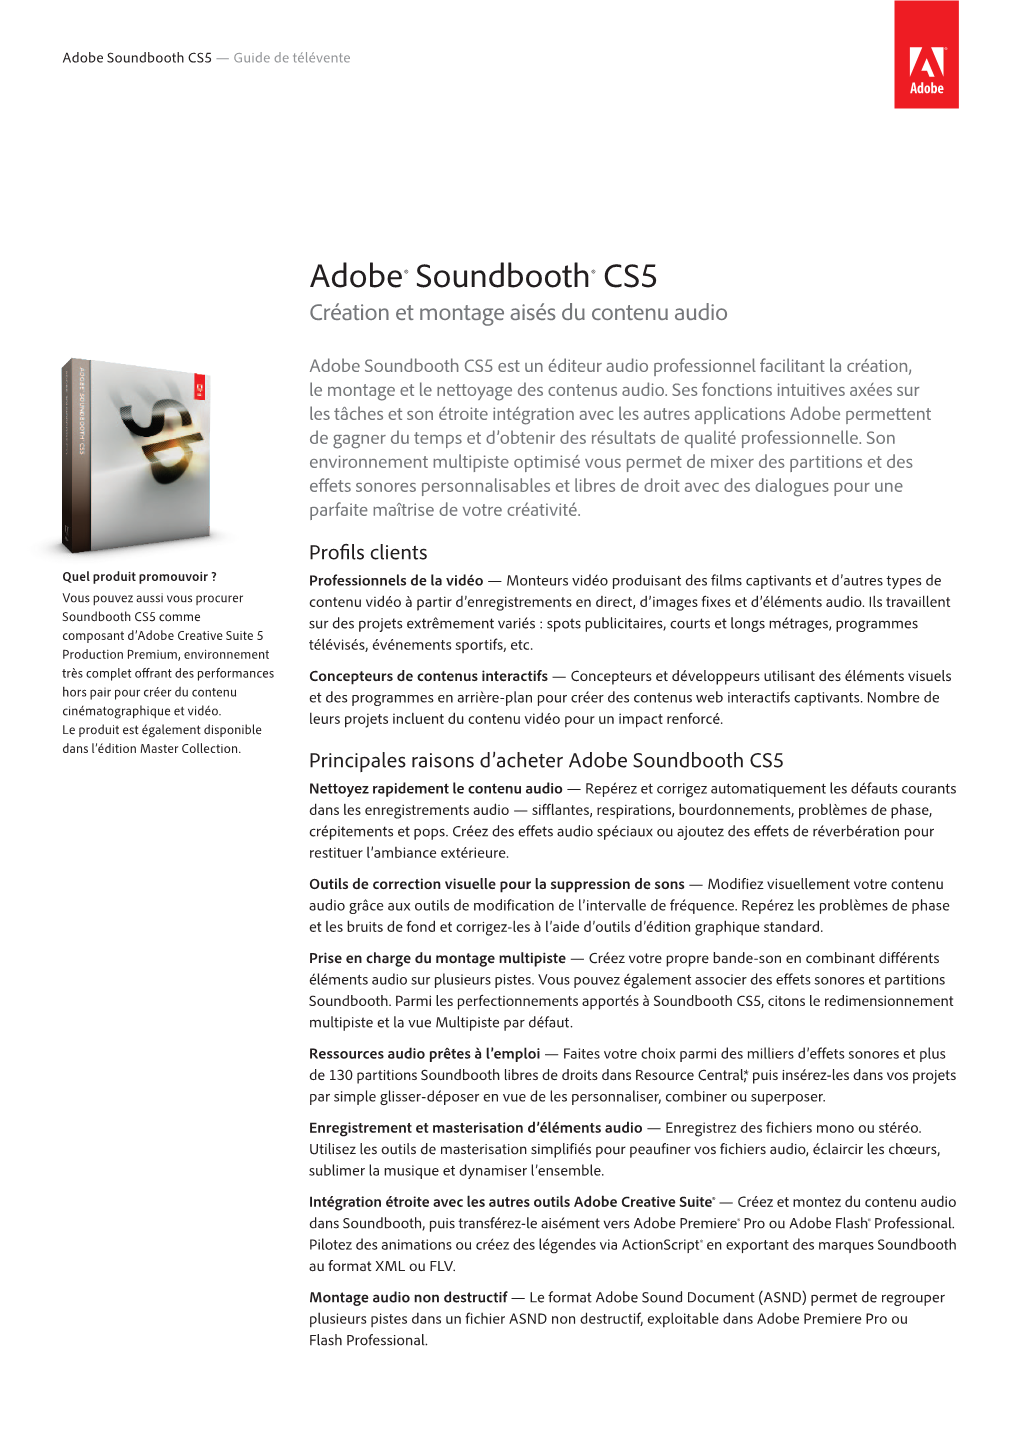 Adobe® Soundbooth® CS5 Création Et Montage Aisés Du Contenu Audio